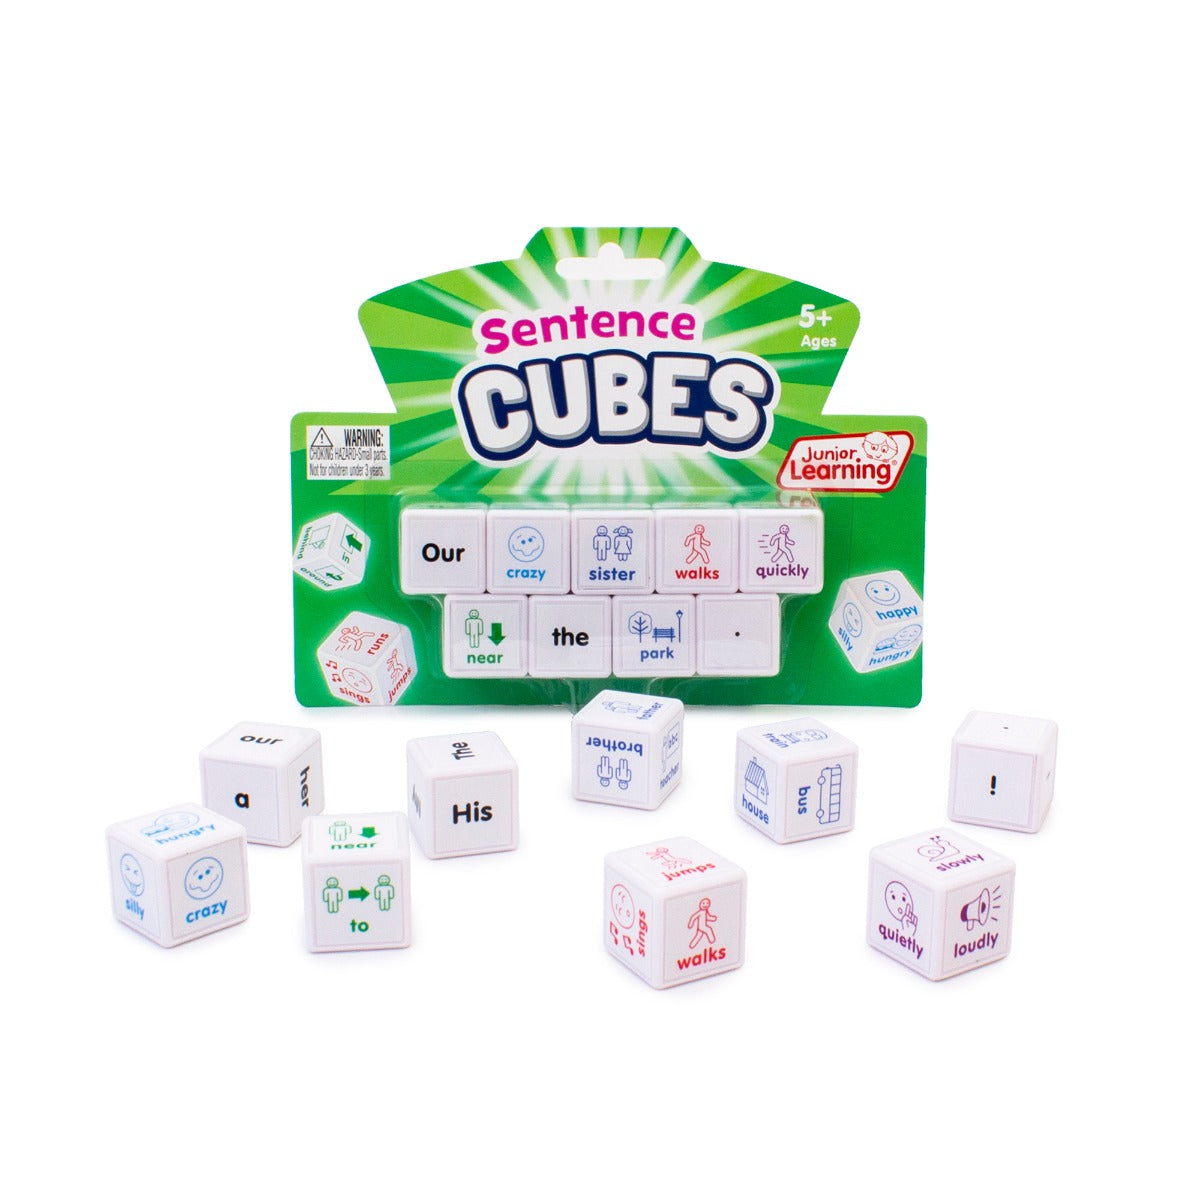 Sentences Cubes